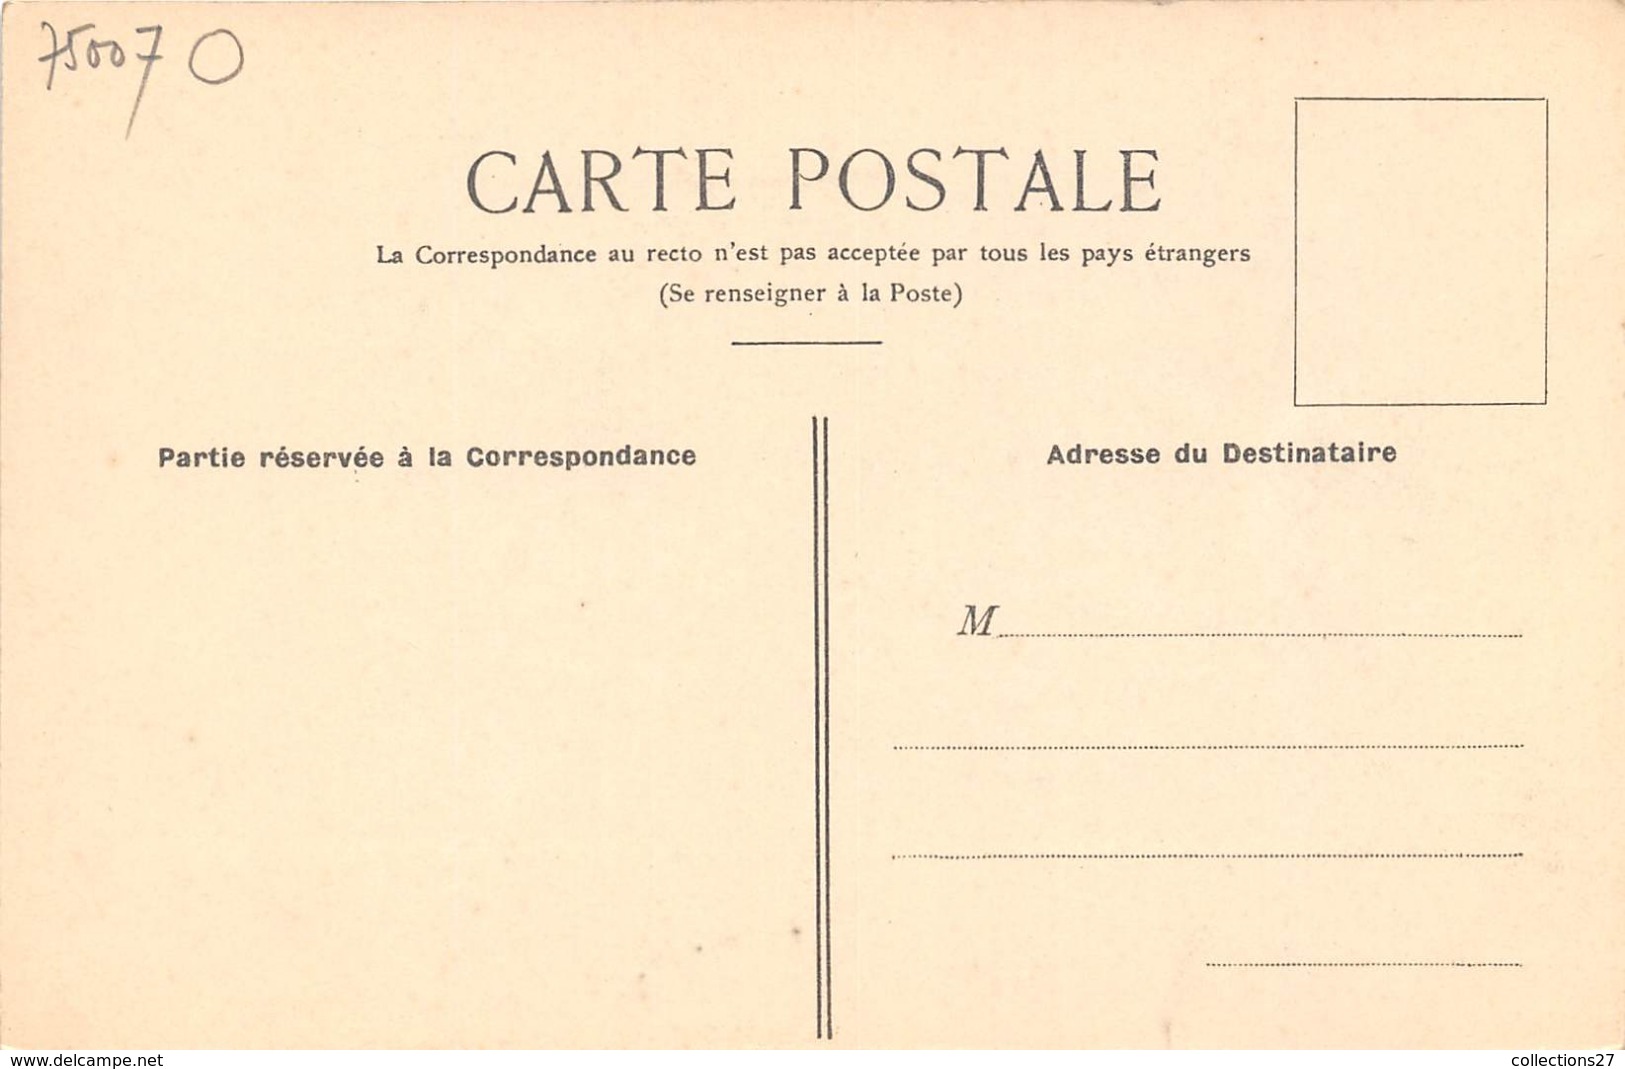 75007-PARIS-AUBERGE- A LA PETITE CHAISE" DATE DE 1681, 36 RUE DE GRENELLE - Arrondissement: 07